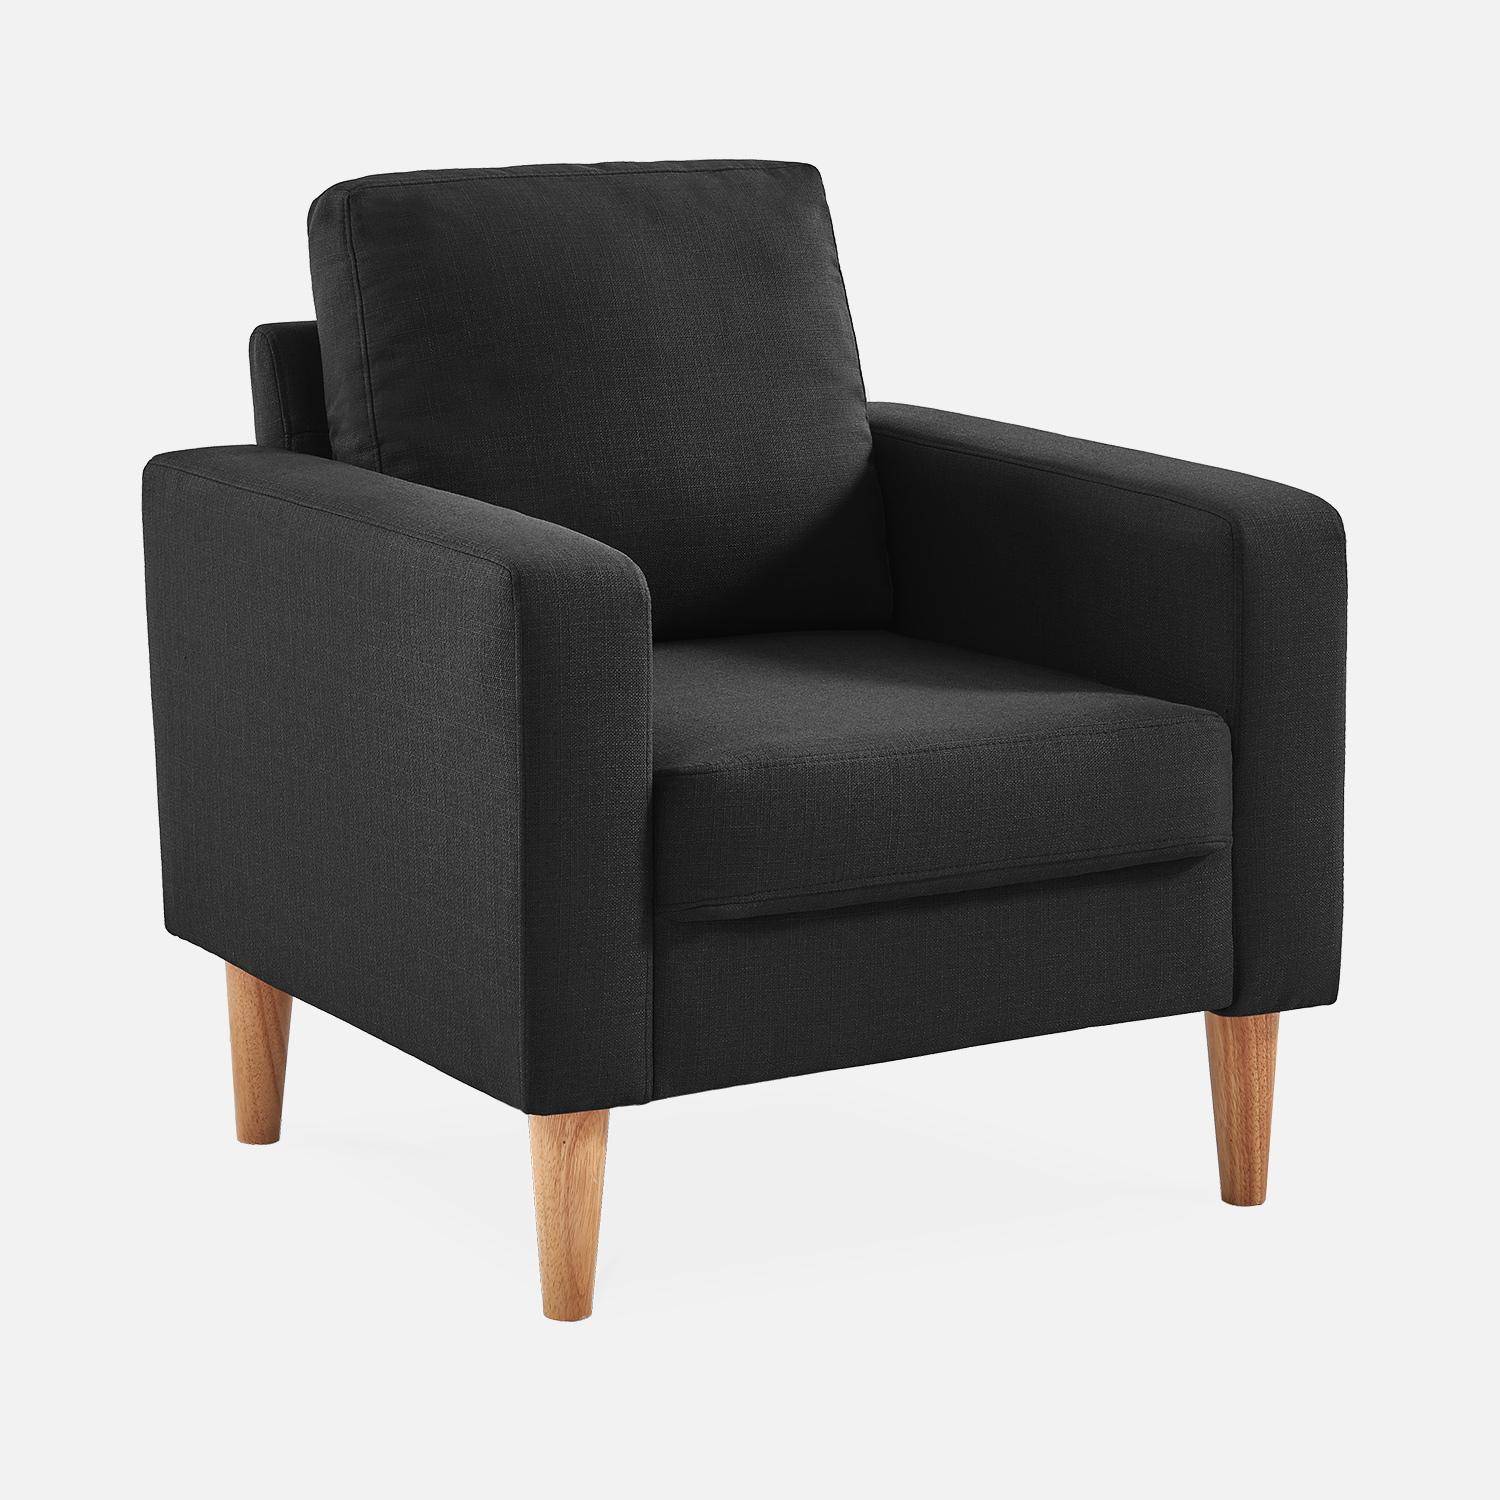 Sillón de tela gris oscuro - Bjorn - Sillón 1 plaza fijo recto patas madera, sillón escandinavo  ,sweeek,Photo2